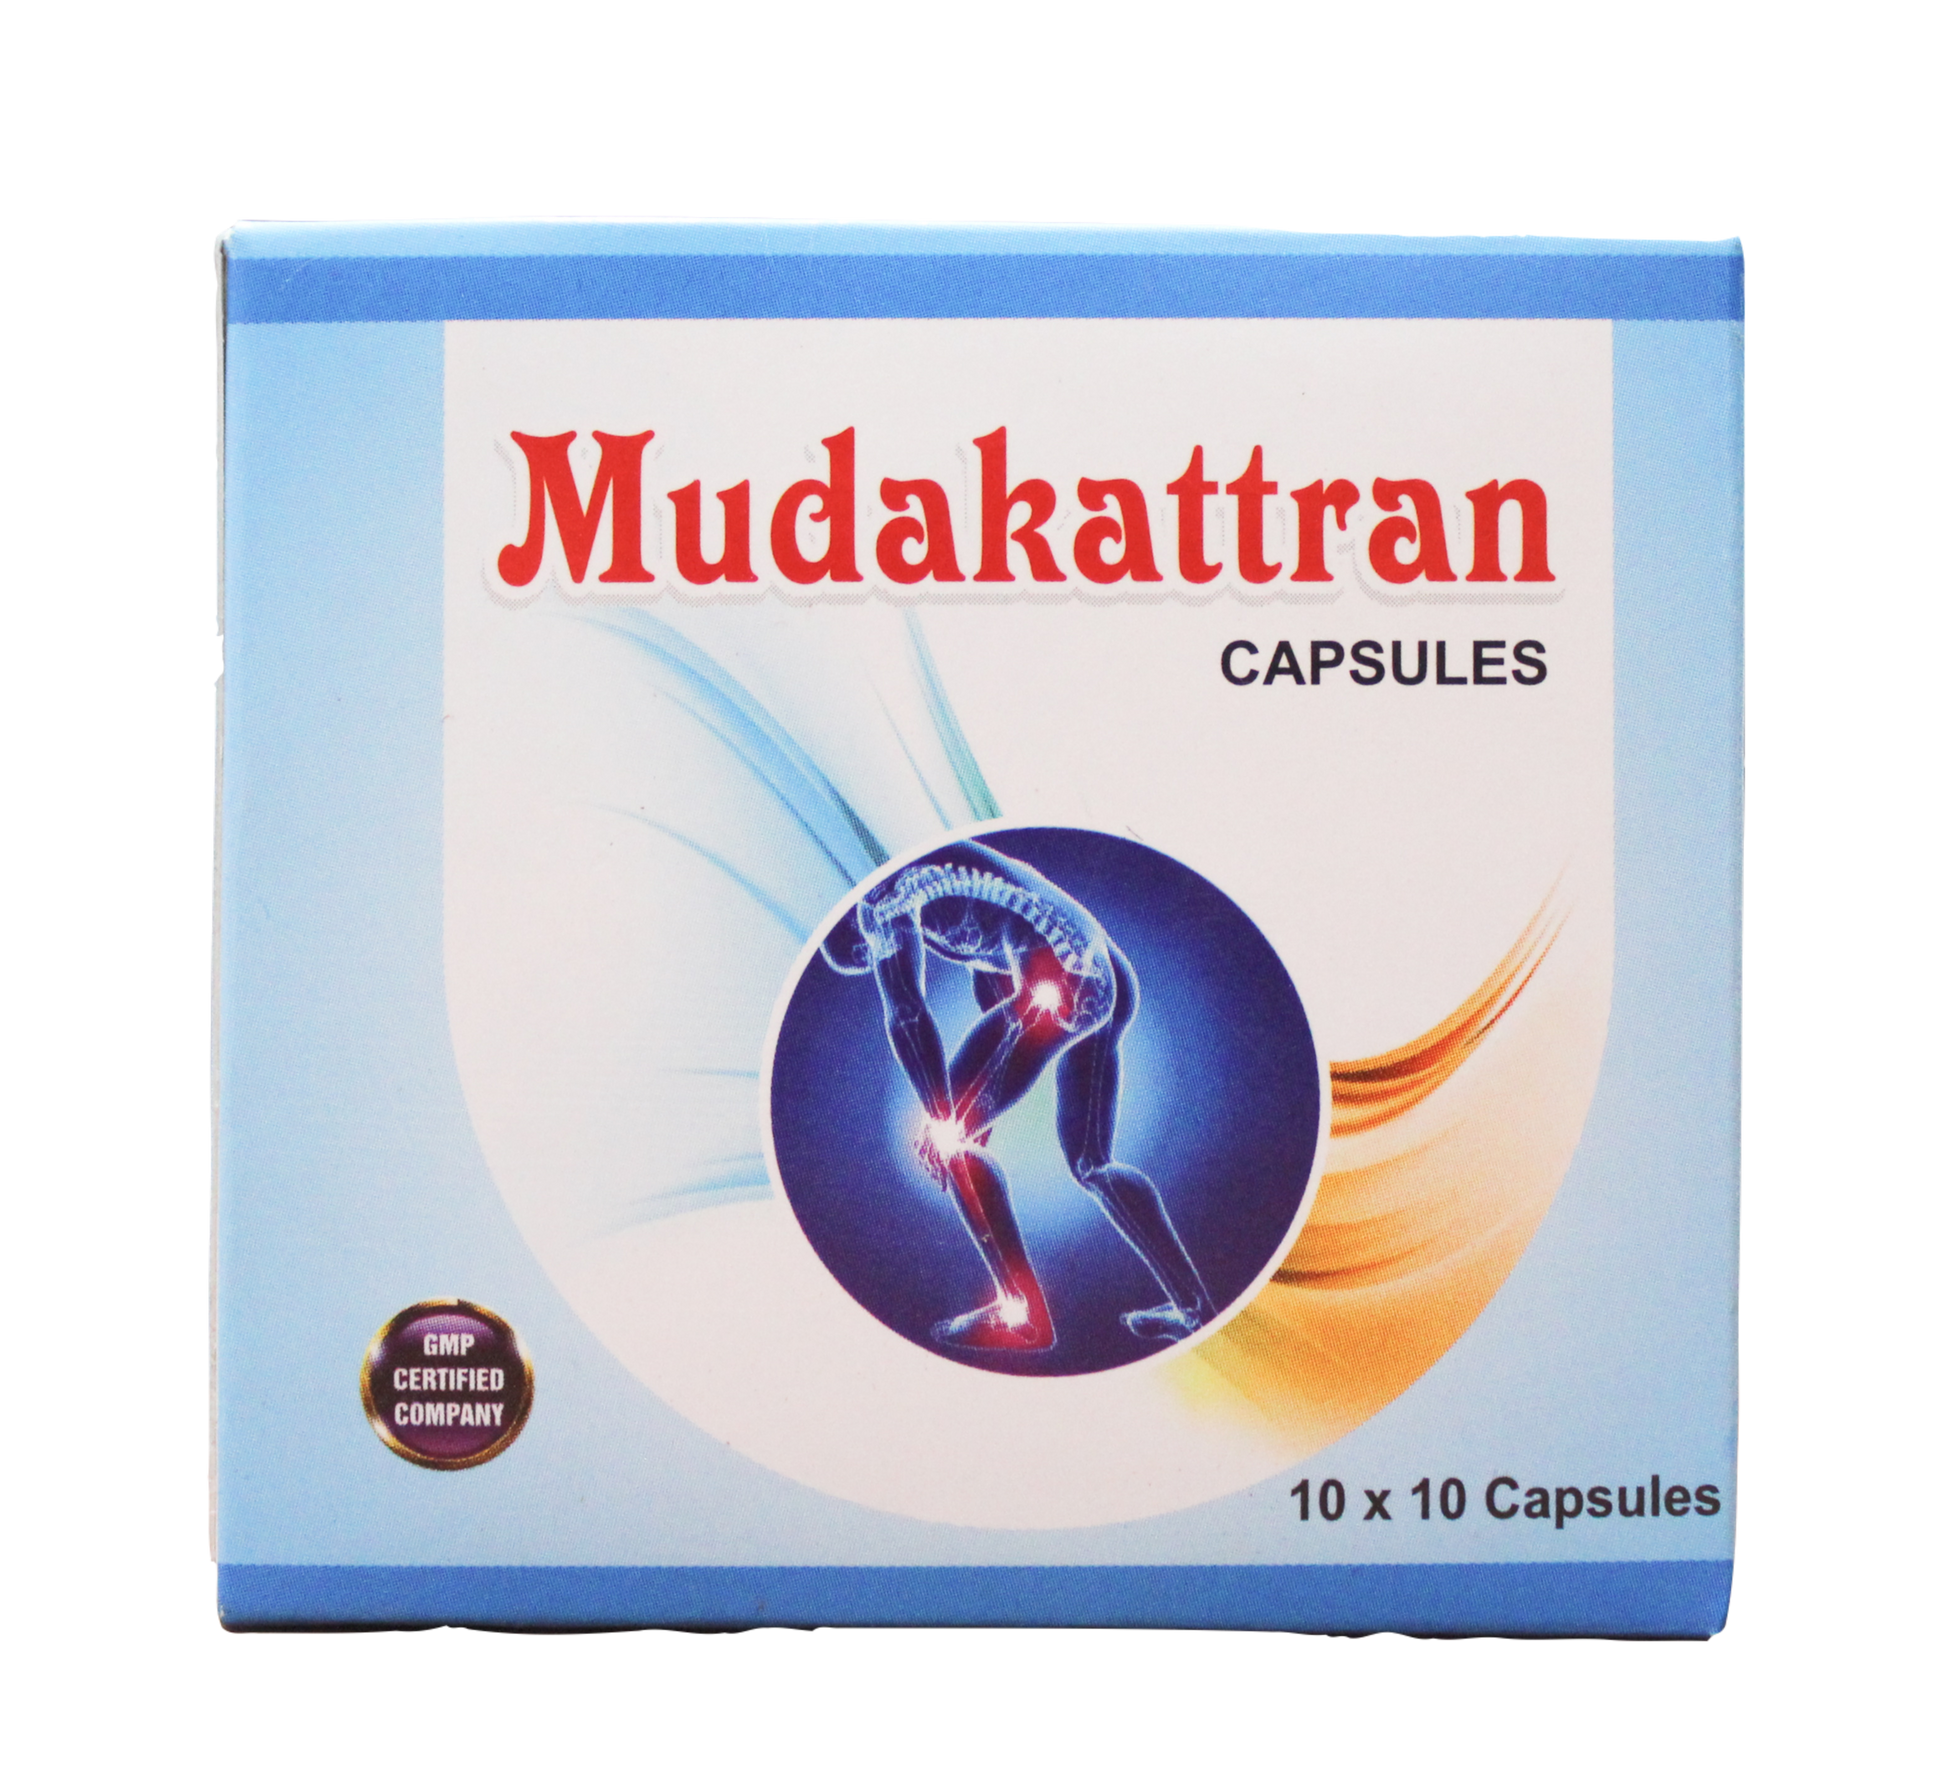 Shop Mudakatran capsules - 10Capsules at price 35.00 from Gem Trease Online - Ayush Care